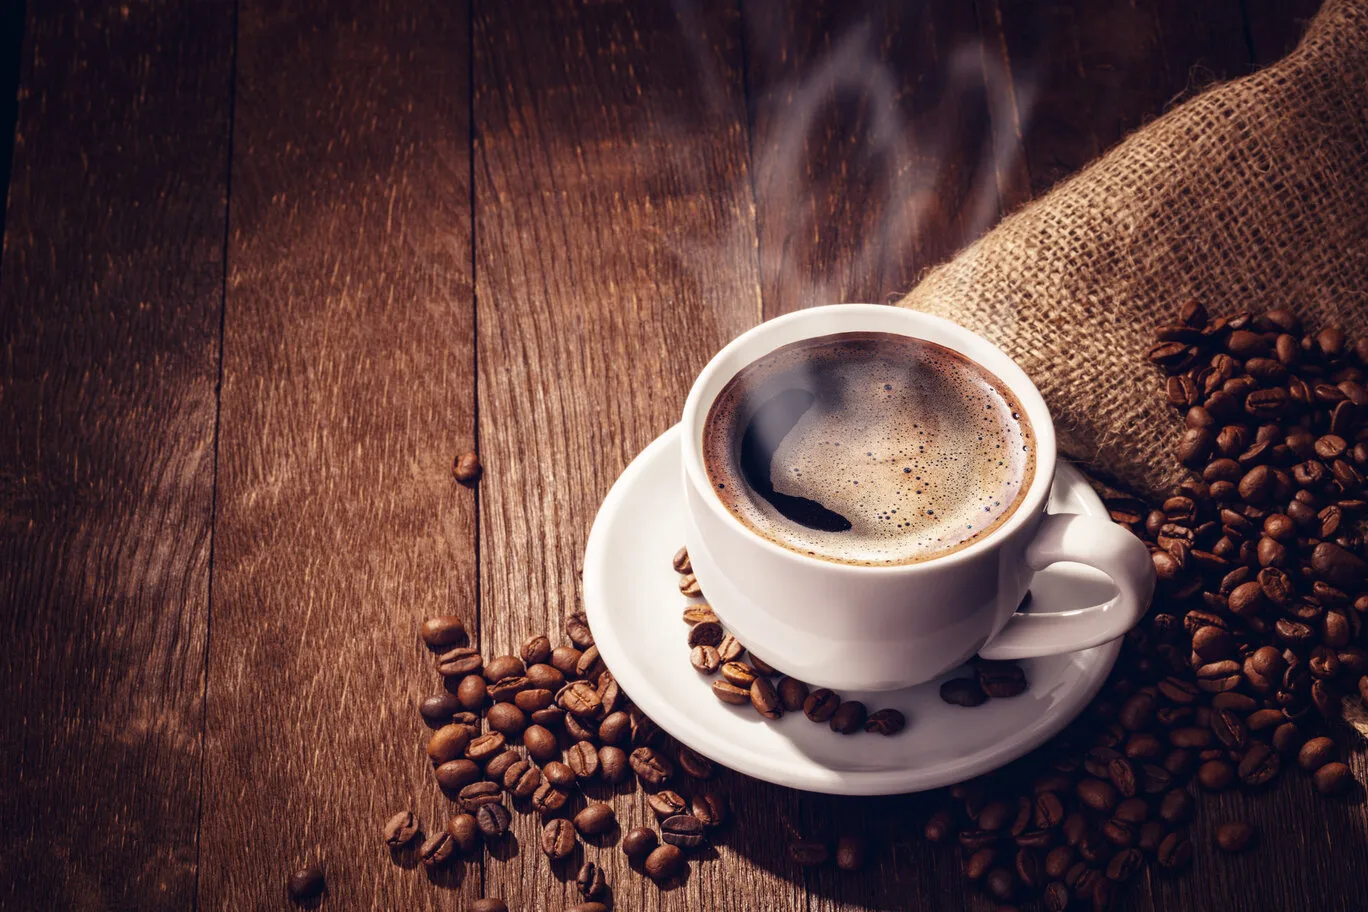 فوائد متعددة في شرب القهوة السوداء لن تتوقعها